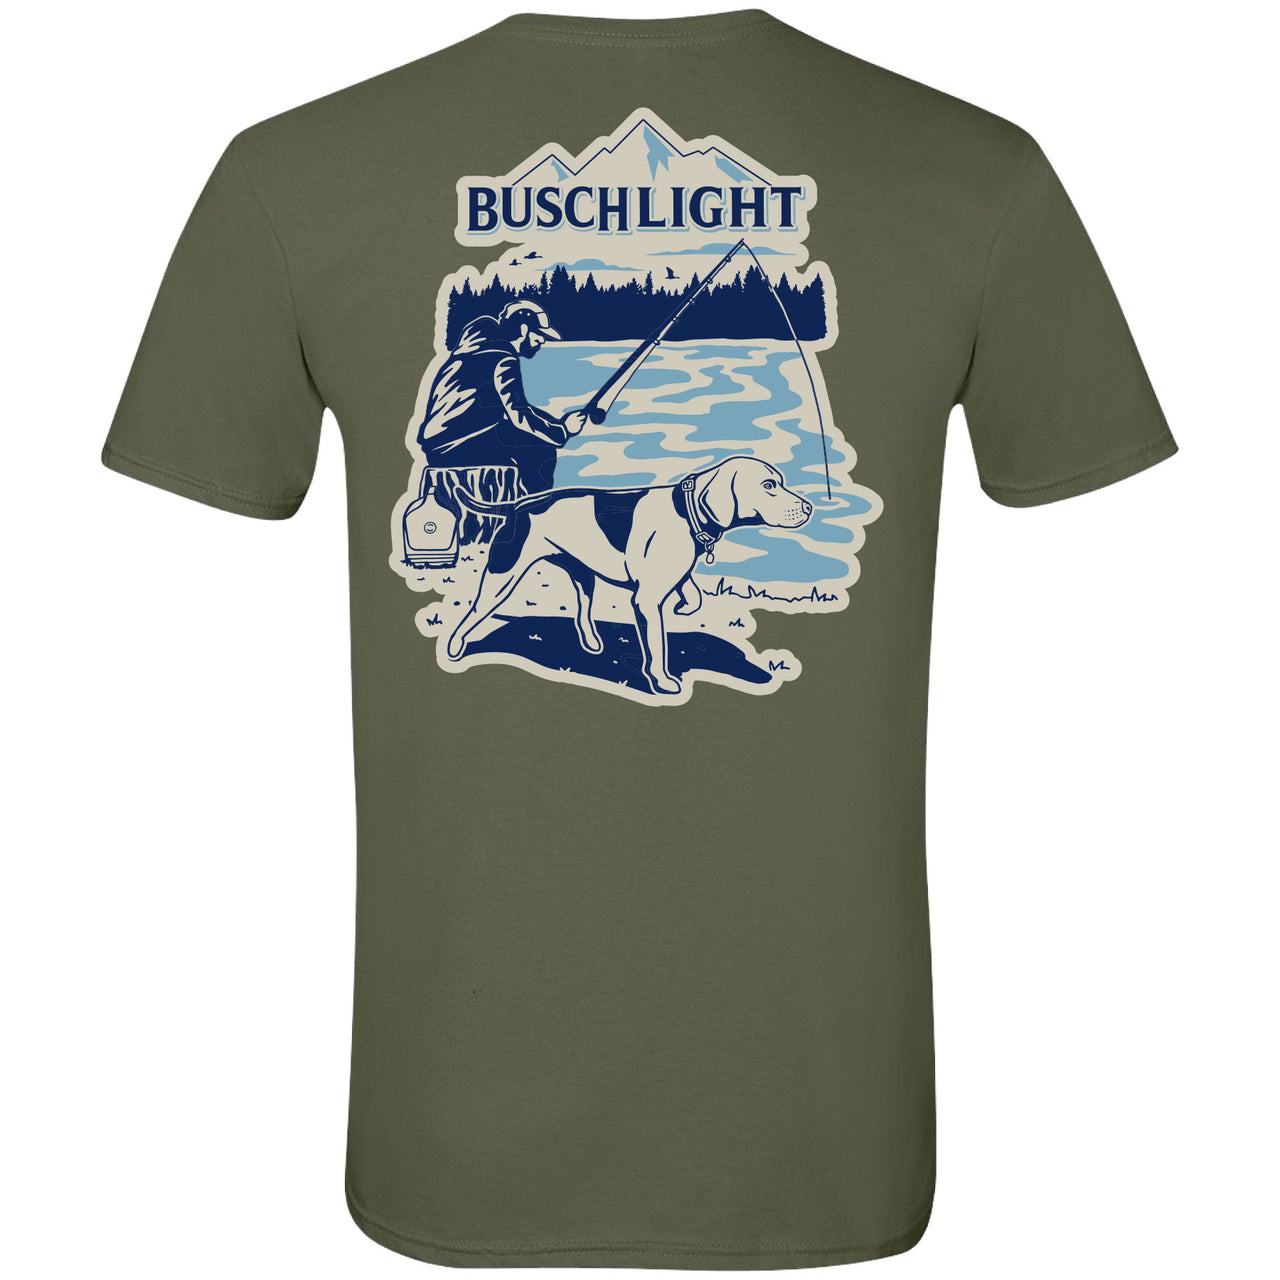 Busch Light Beer Shirts & Apparel - Brew City Beer Gear